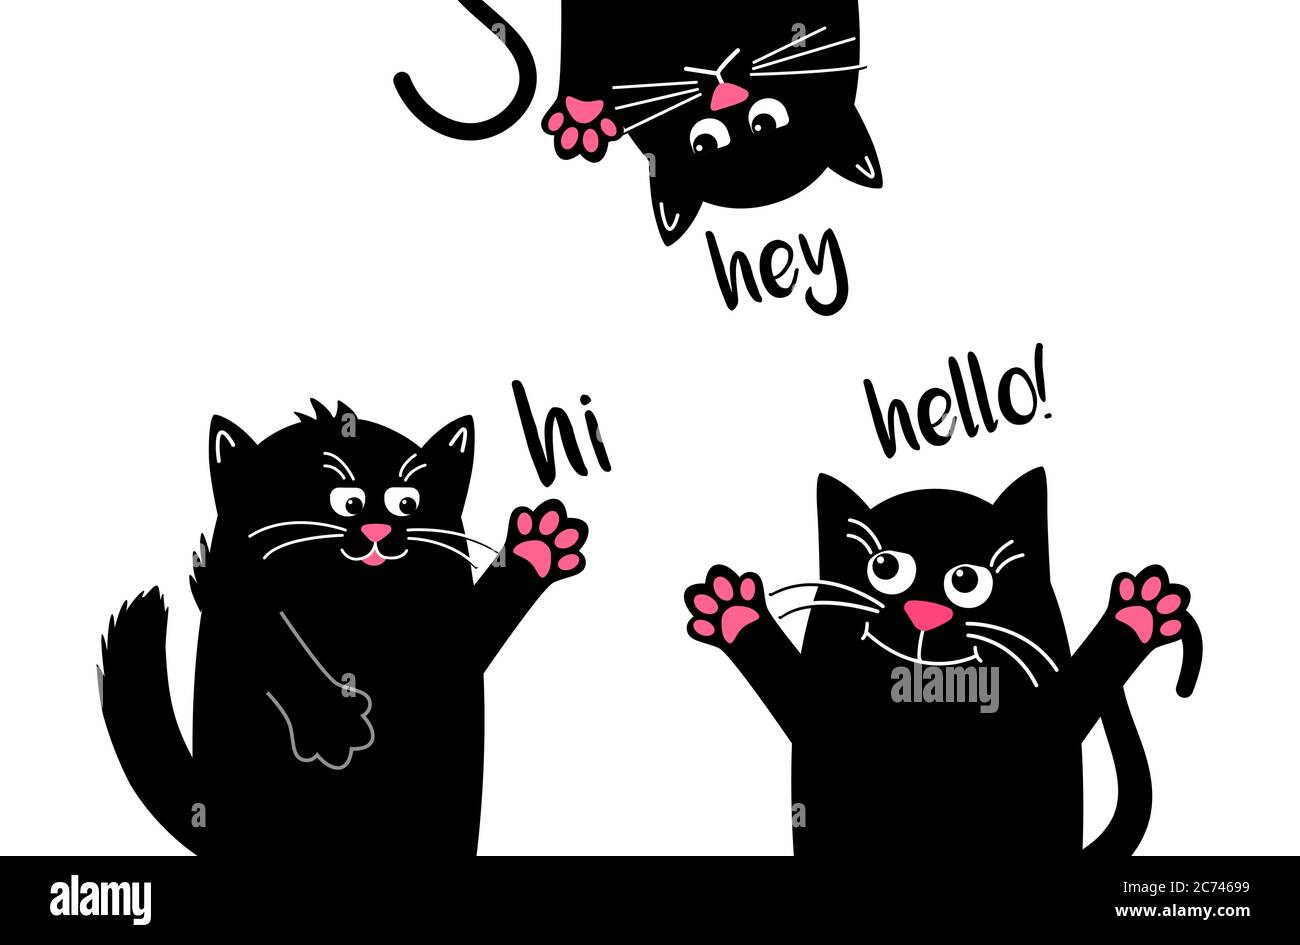 Les chats noirs drôles disent bonjour quand ils se rencontrent. Animal kawaii drôle. Chat noir isolé. Dessin animé vectoriel Illustration à plat. Joli personnage de dessin animé. Illustration de Vecteur